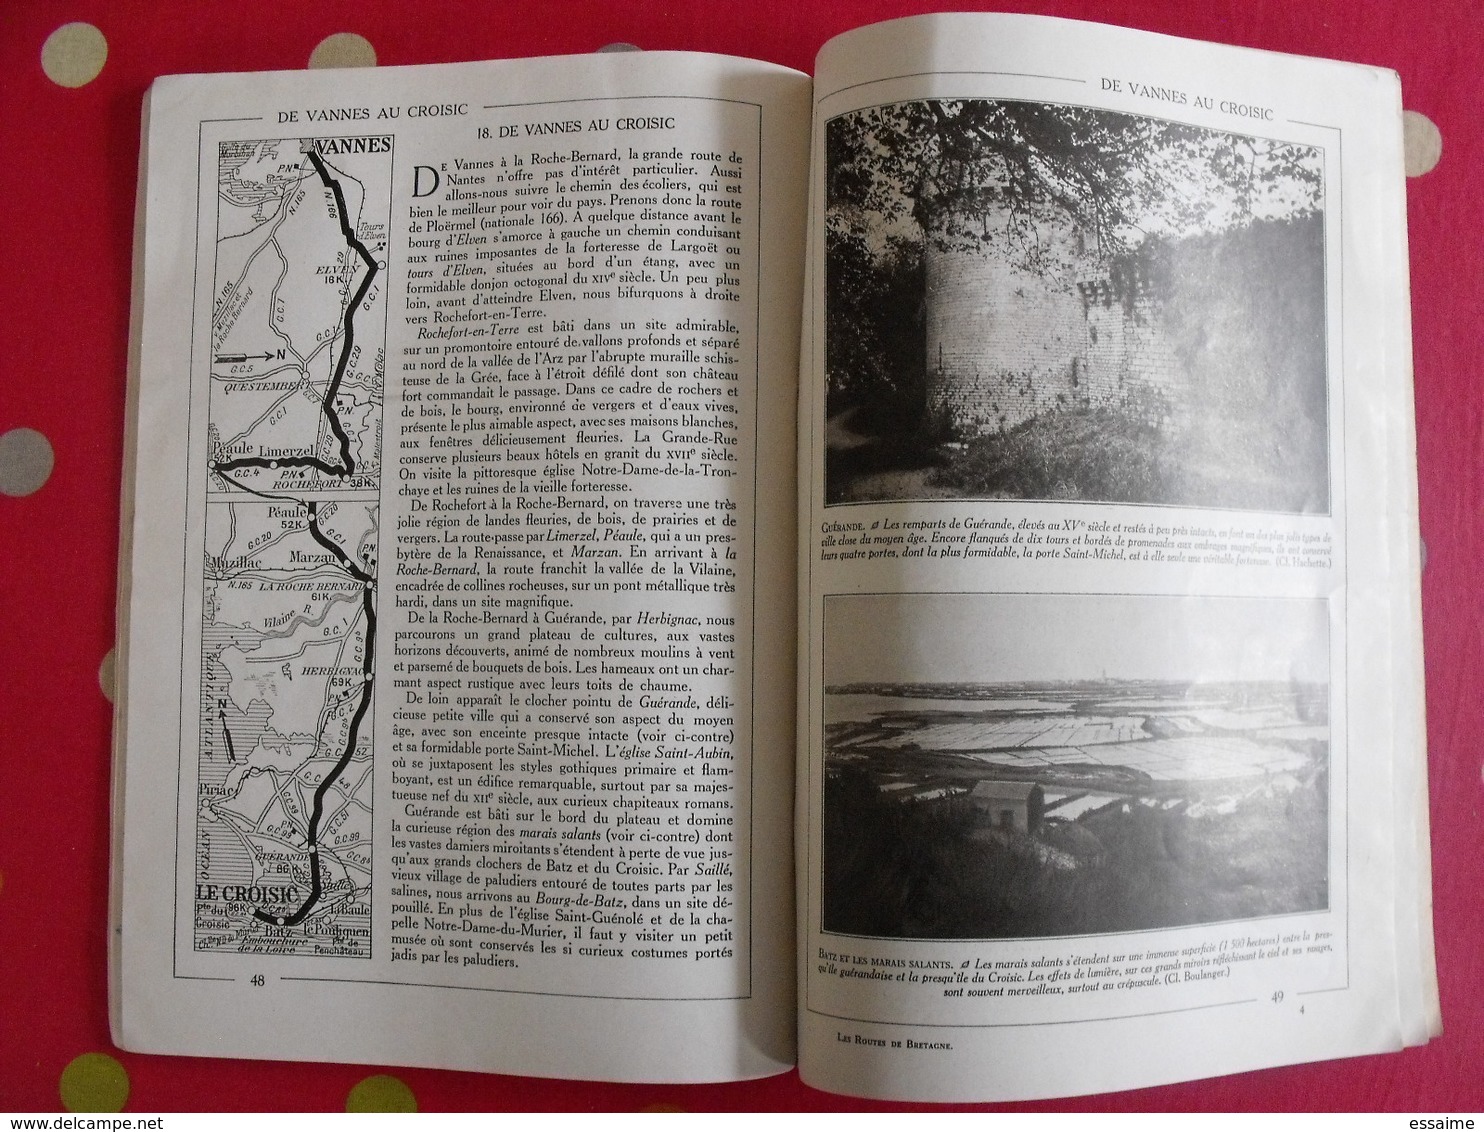 Les routes de Bretagne. Hachette 1930. bien illustré de photos